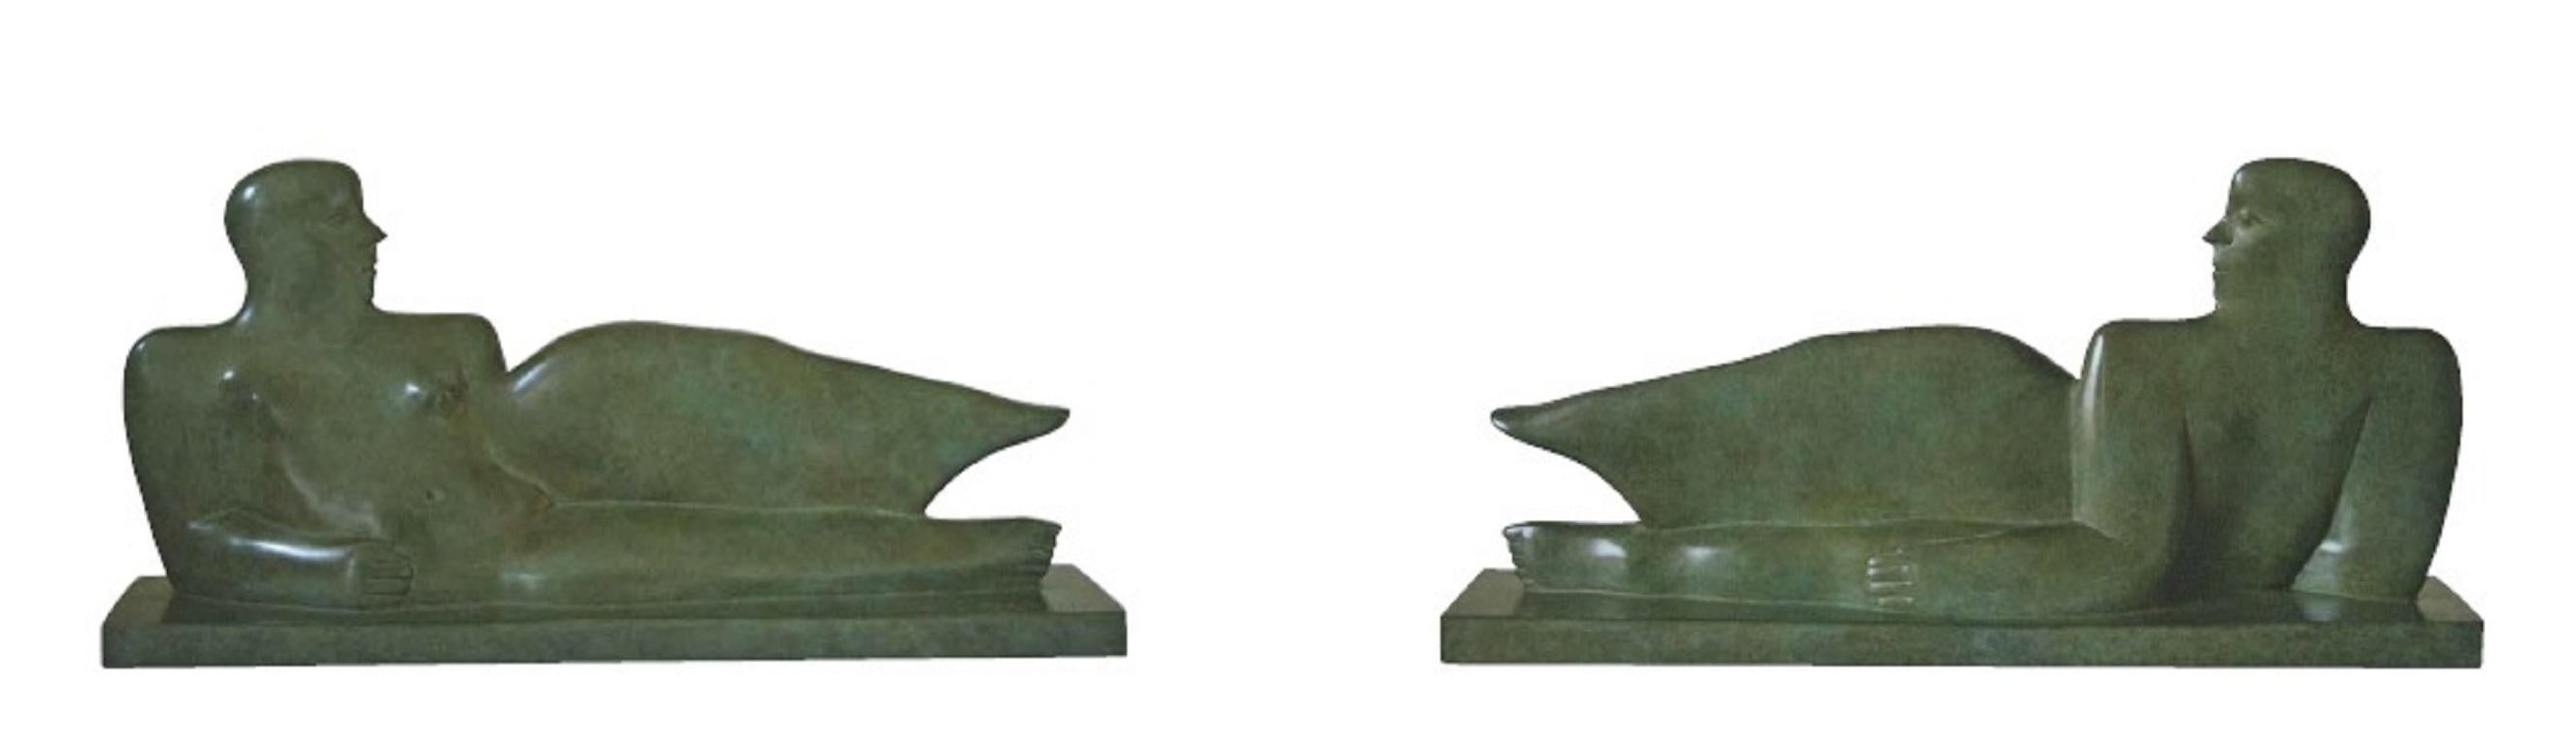 Eroina Sdraiata  Sculpture en bronze Ailes allongées Ange figuratif 

KOBE, pseudonyme de Jacques Saelens, était un artiste belge (Courtrai, Belgique 1950 - Saint-Julien (Var), France 2014).

Il a combiné le large avec la sophistication. Deux thèmes